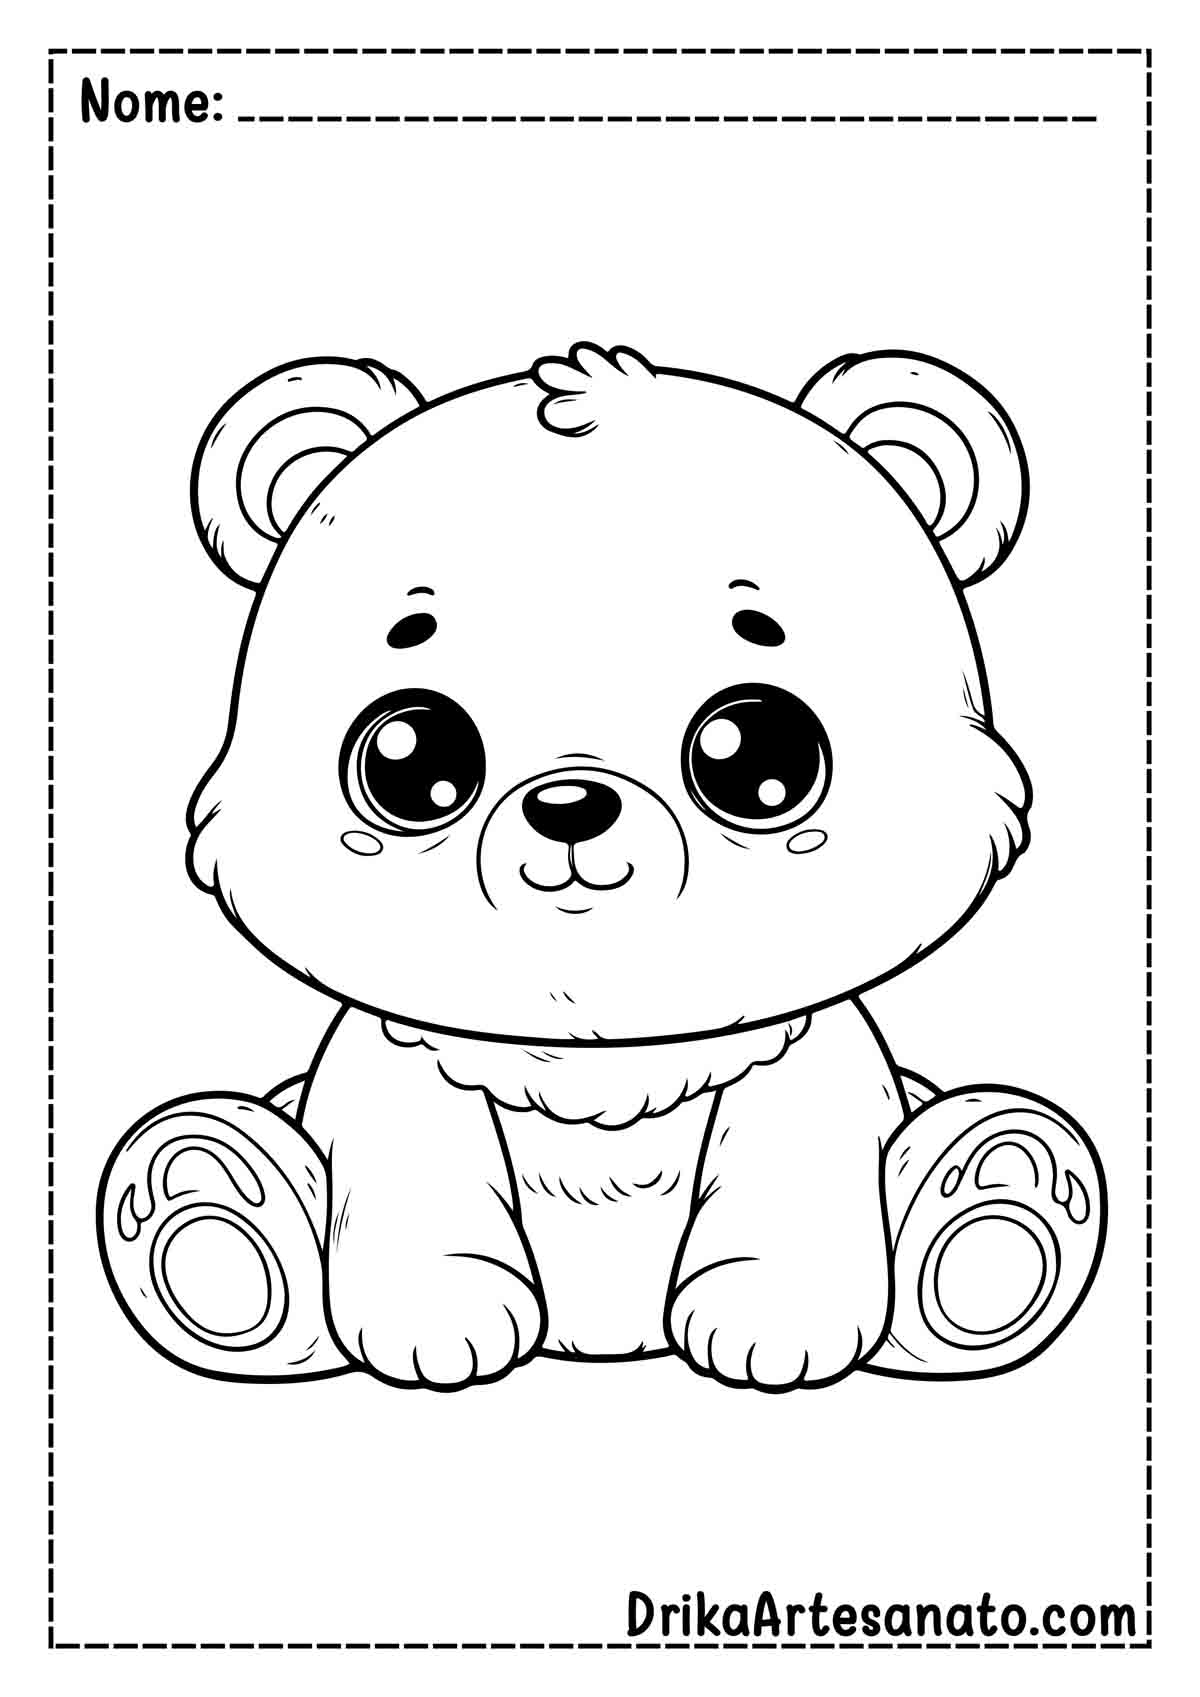 Desenho de Urso Fofo para Colorir e Imprimir